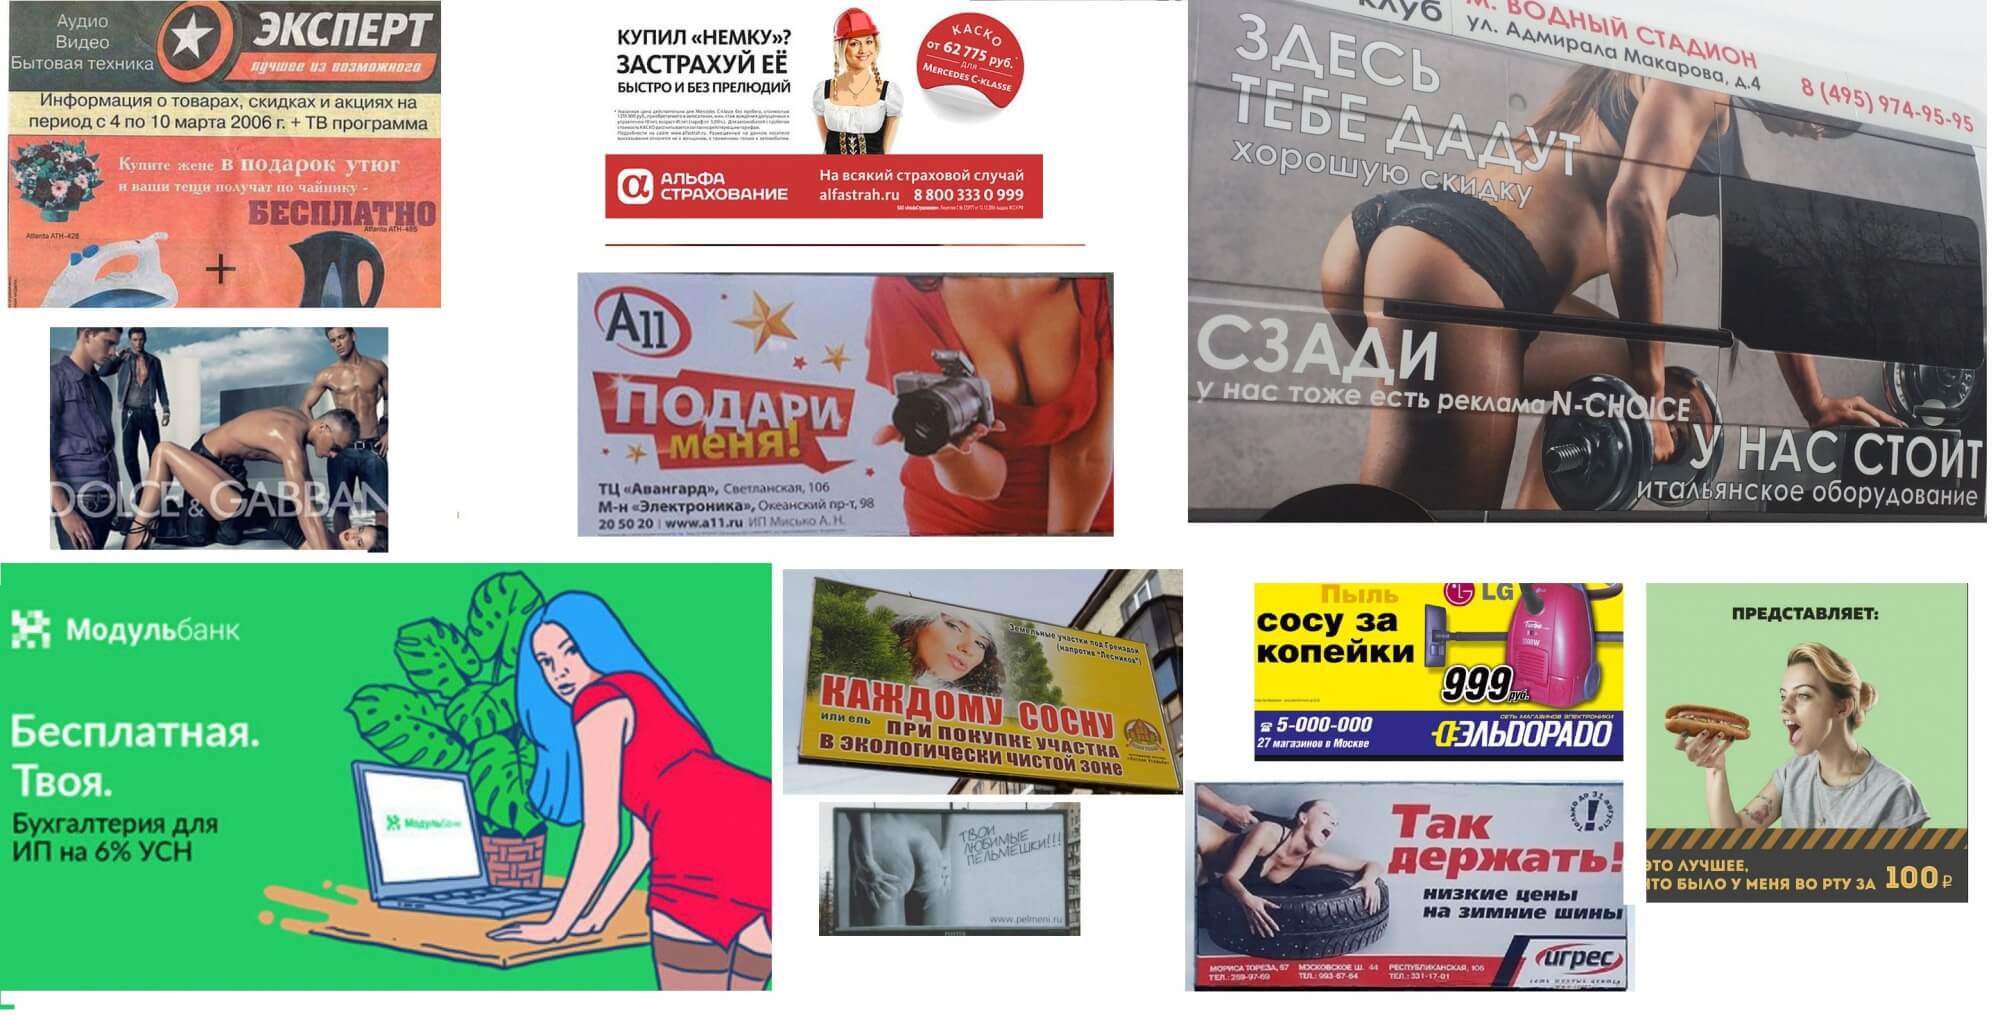 Примеры ущемления женщин в рекламе.jpg